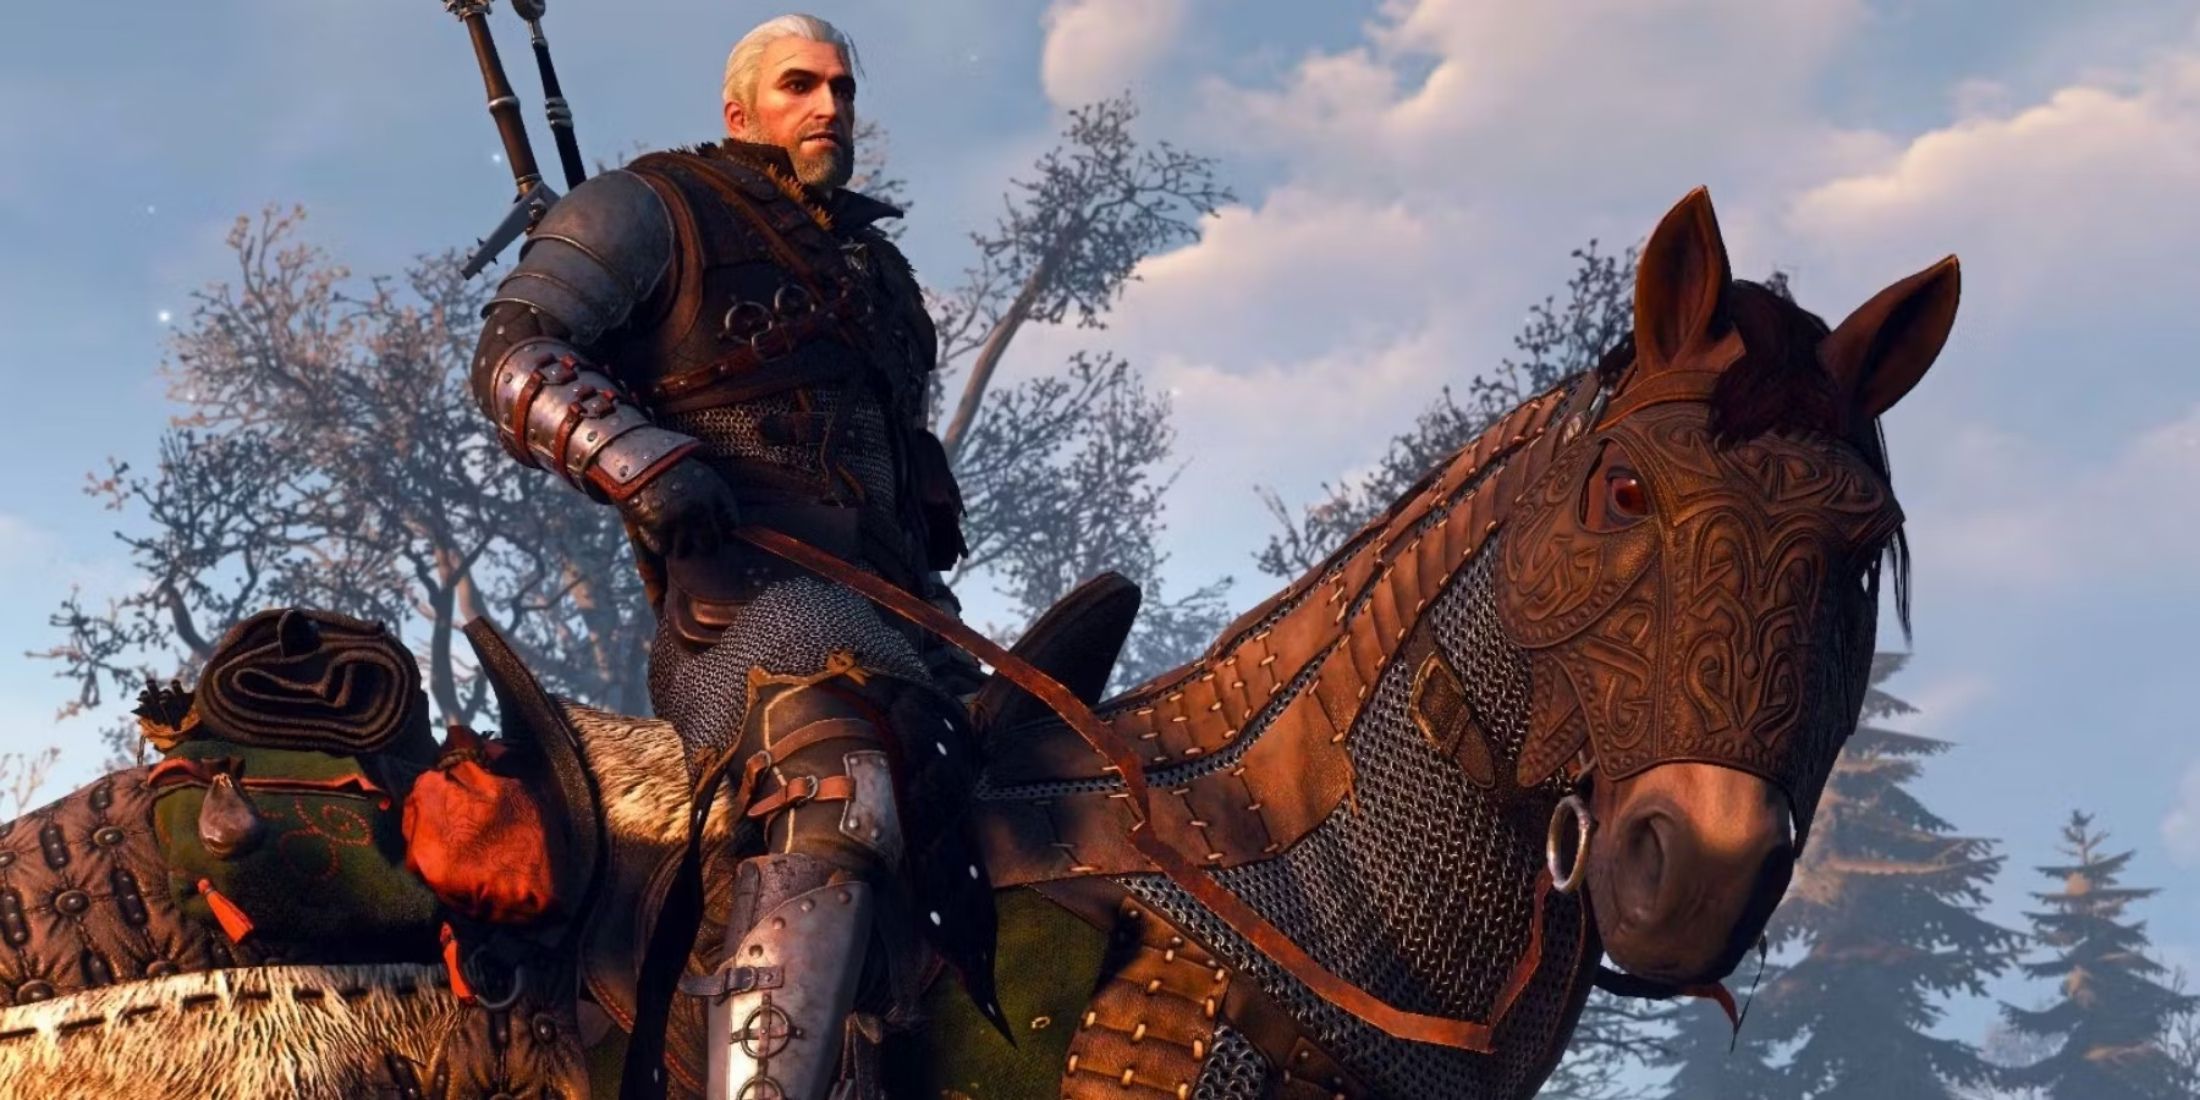 Geralt montando seu cavalo, Roach, em The Witcher 3